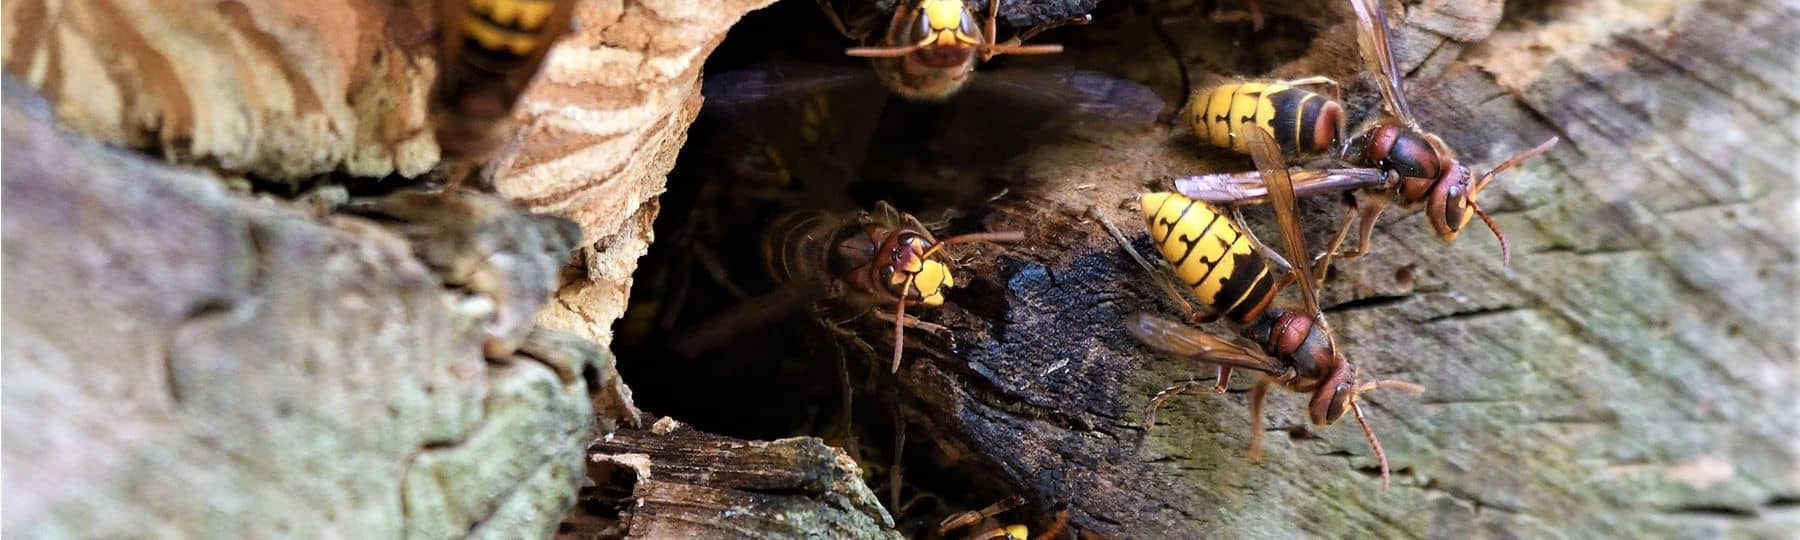 Europese hoornaars komen uit een nest in een boomstronk.